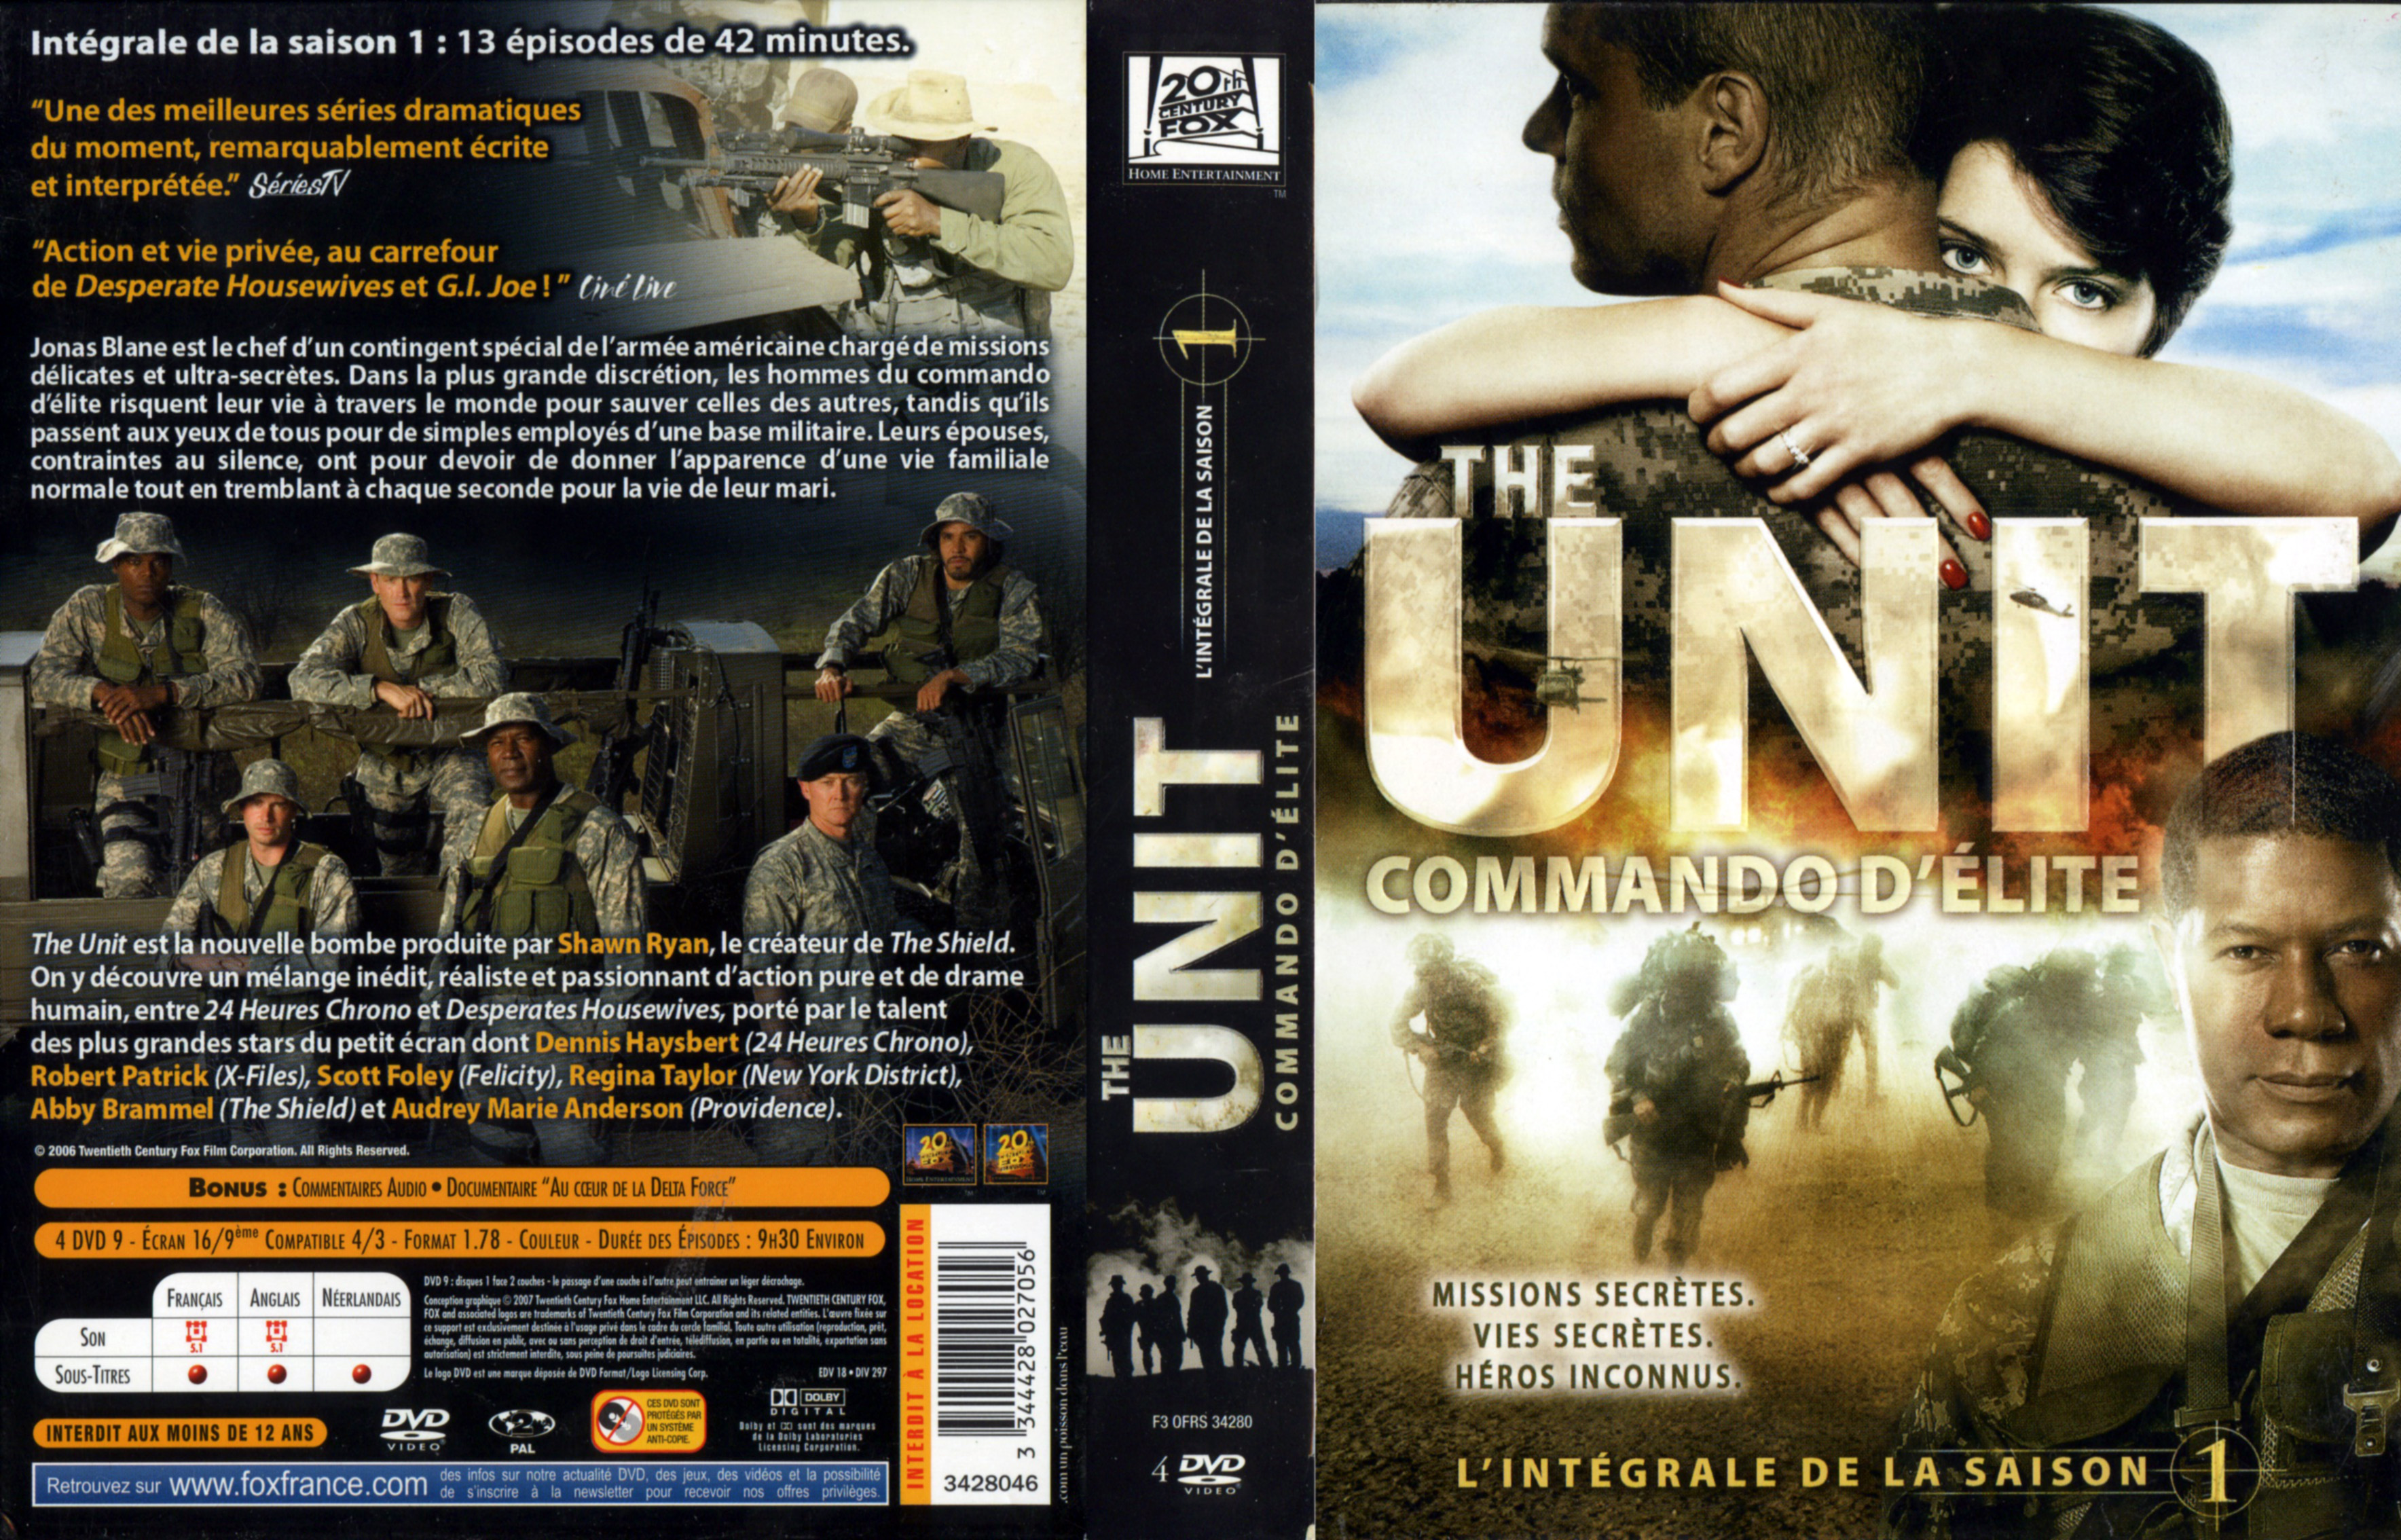 Jaquette DVD The unit Saison 1 COFFRET